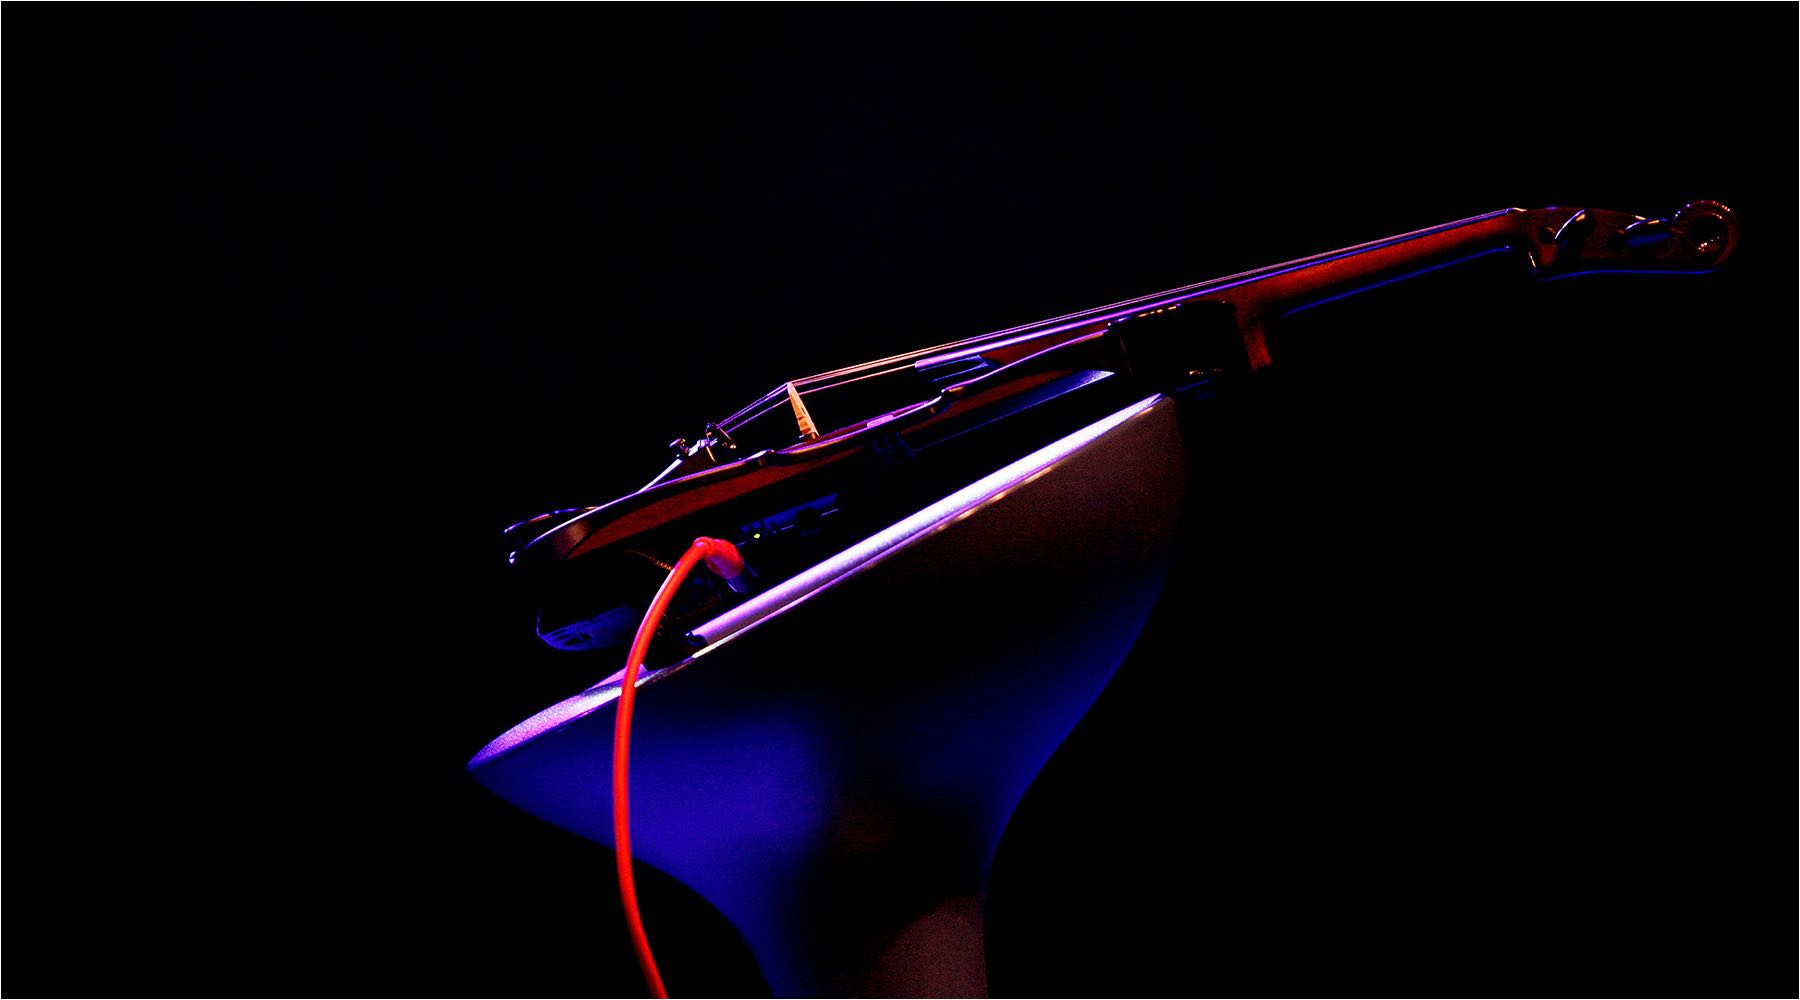  Produktfotografie. Konzeptstudie einer Meister Violine mit aufwendigem farbigen Lichtkonzept. Copyright by Fotostudio Jörg Riethausen 